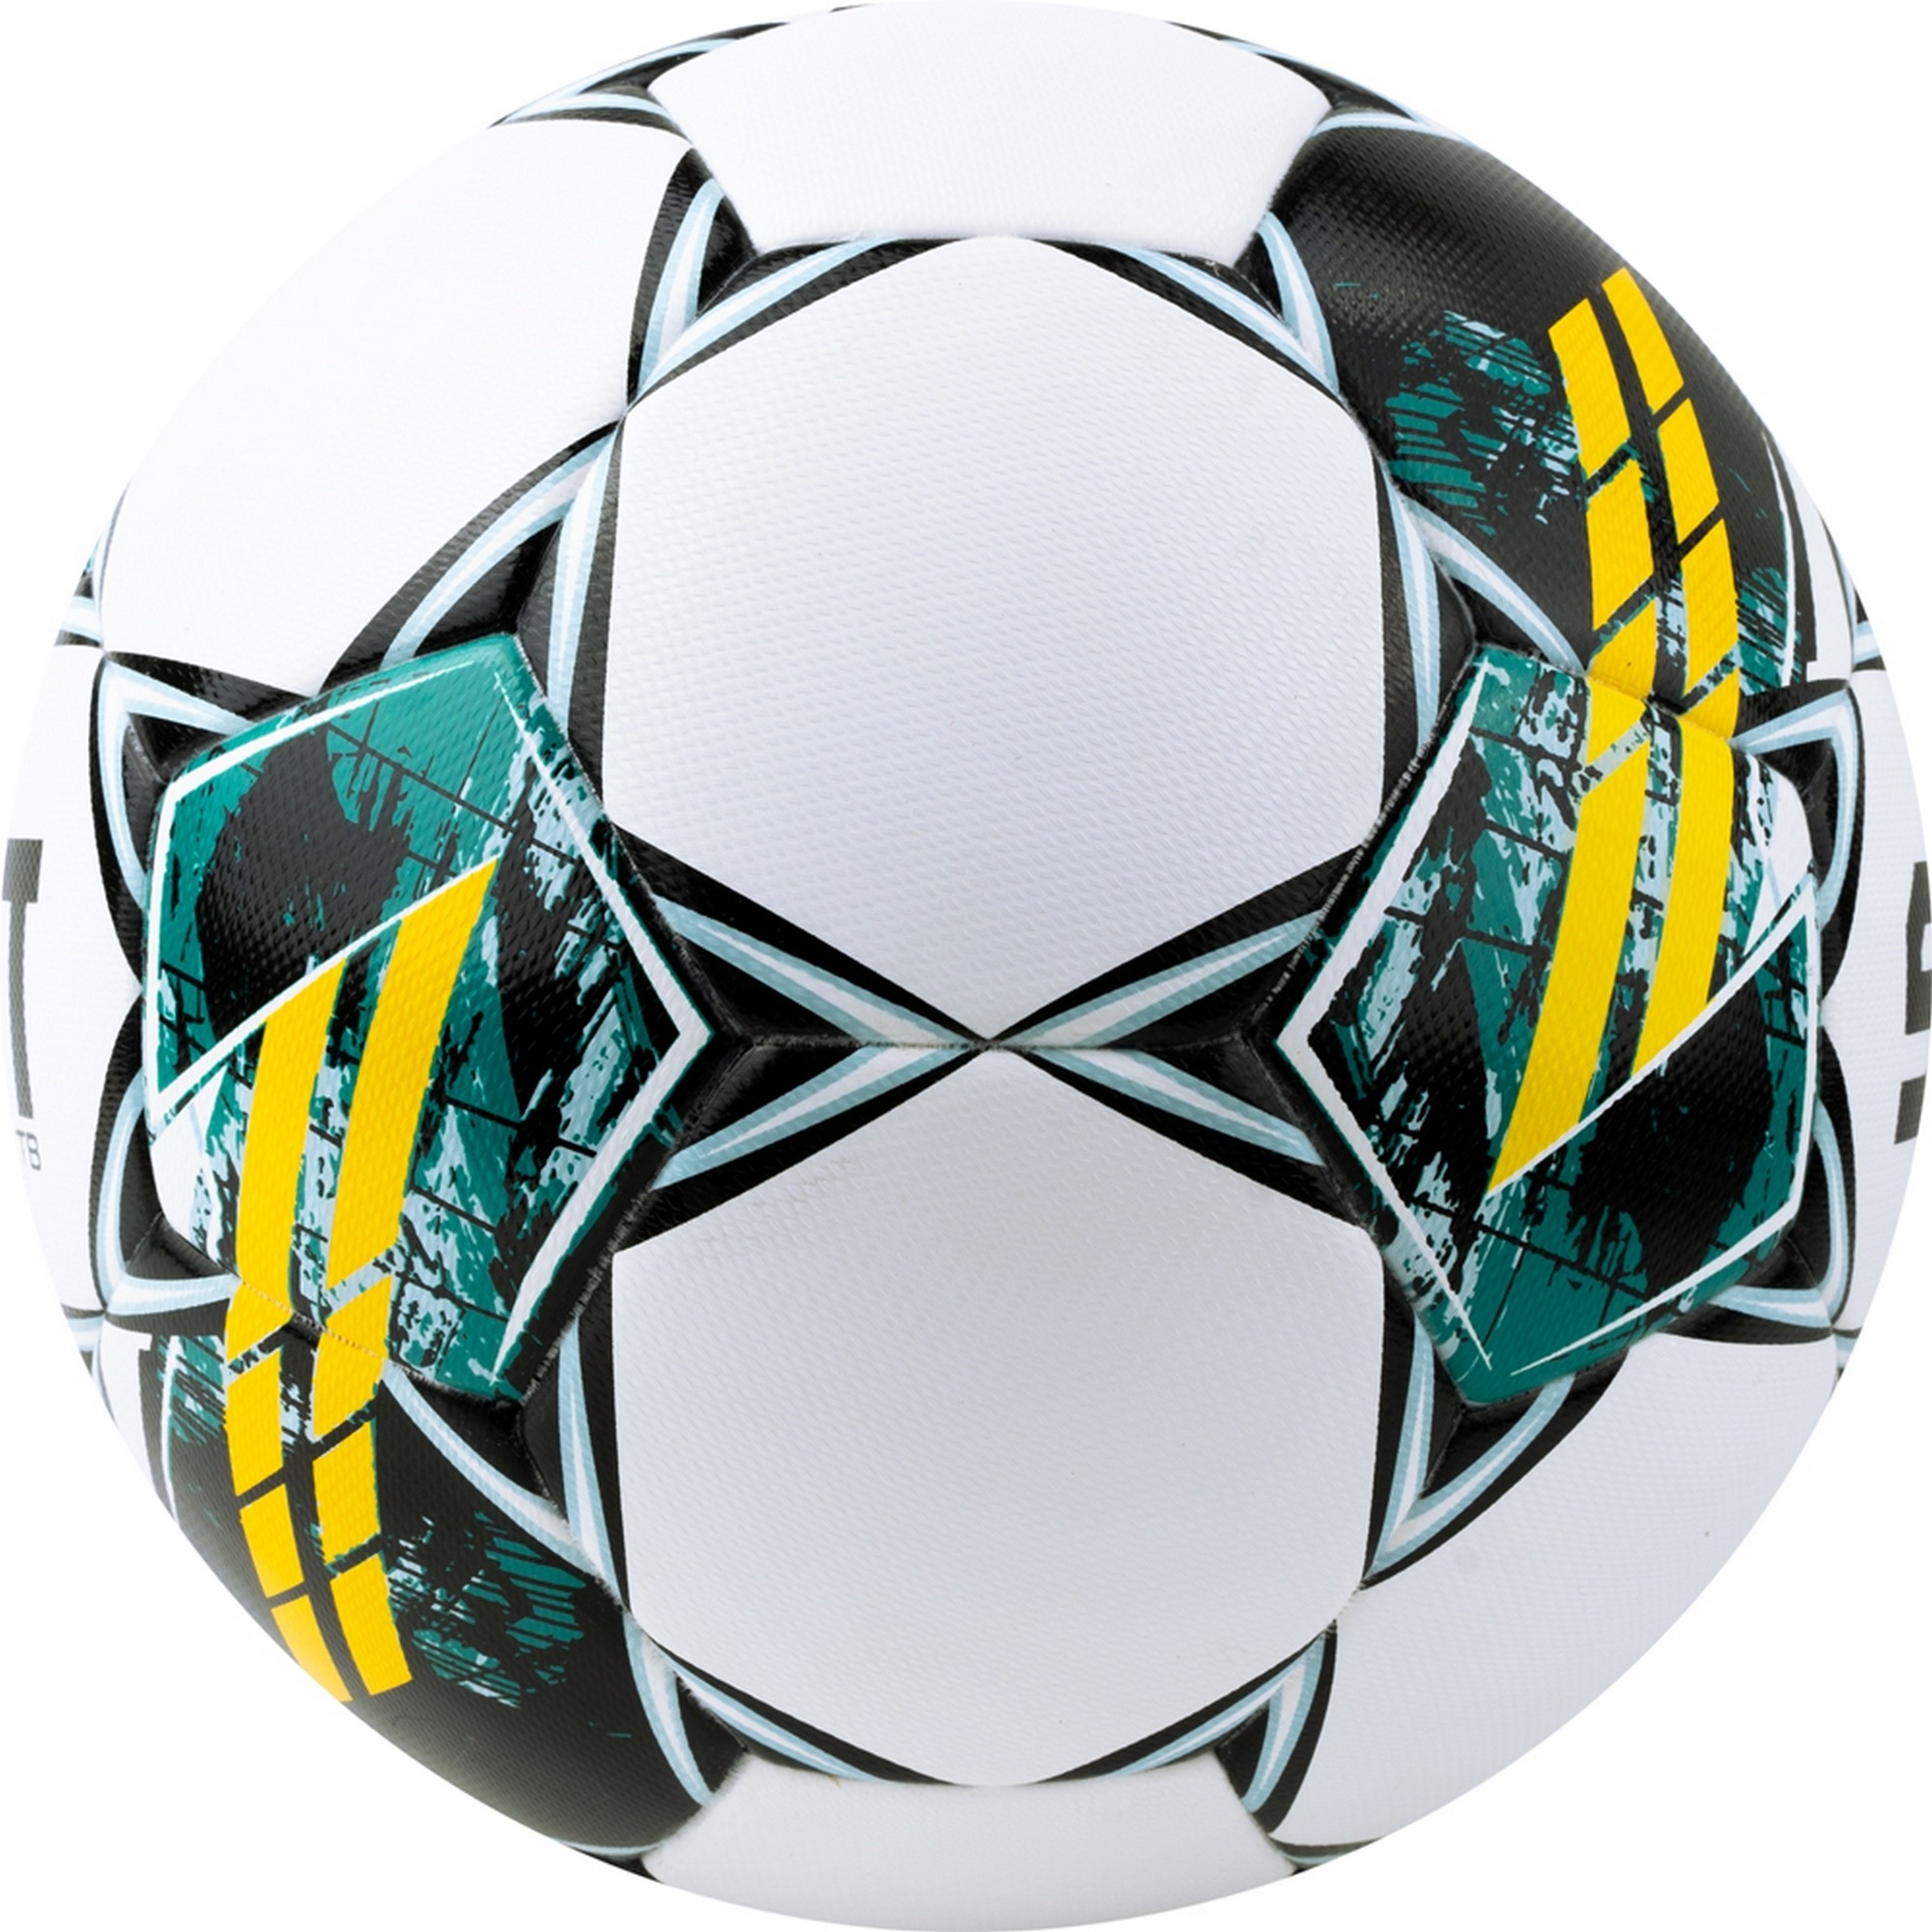 Мяч футбольный Select Pioneer TB V23 0864060005 р.4 2000_2000